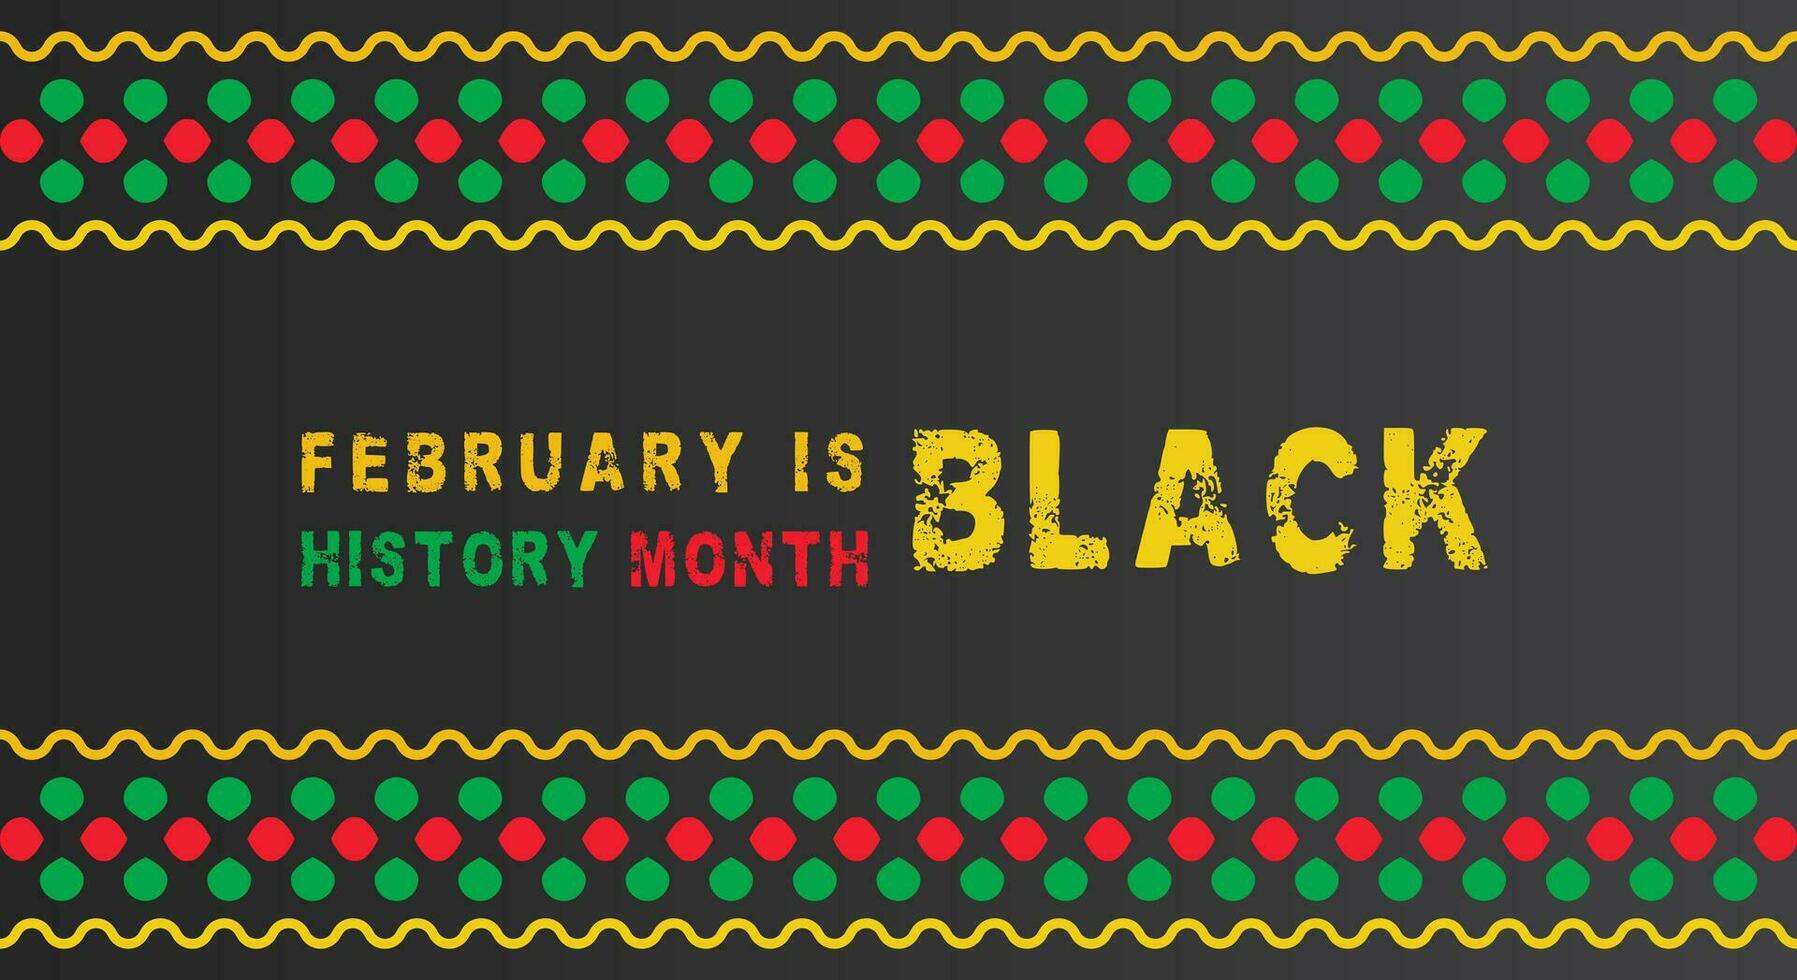 Preto história mês vetor Projeto. africano americano celebração modelo para fundo, bandeira, poster